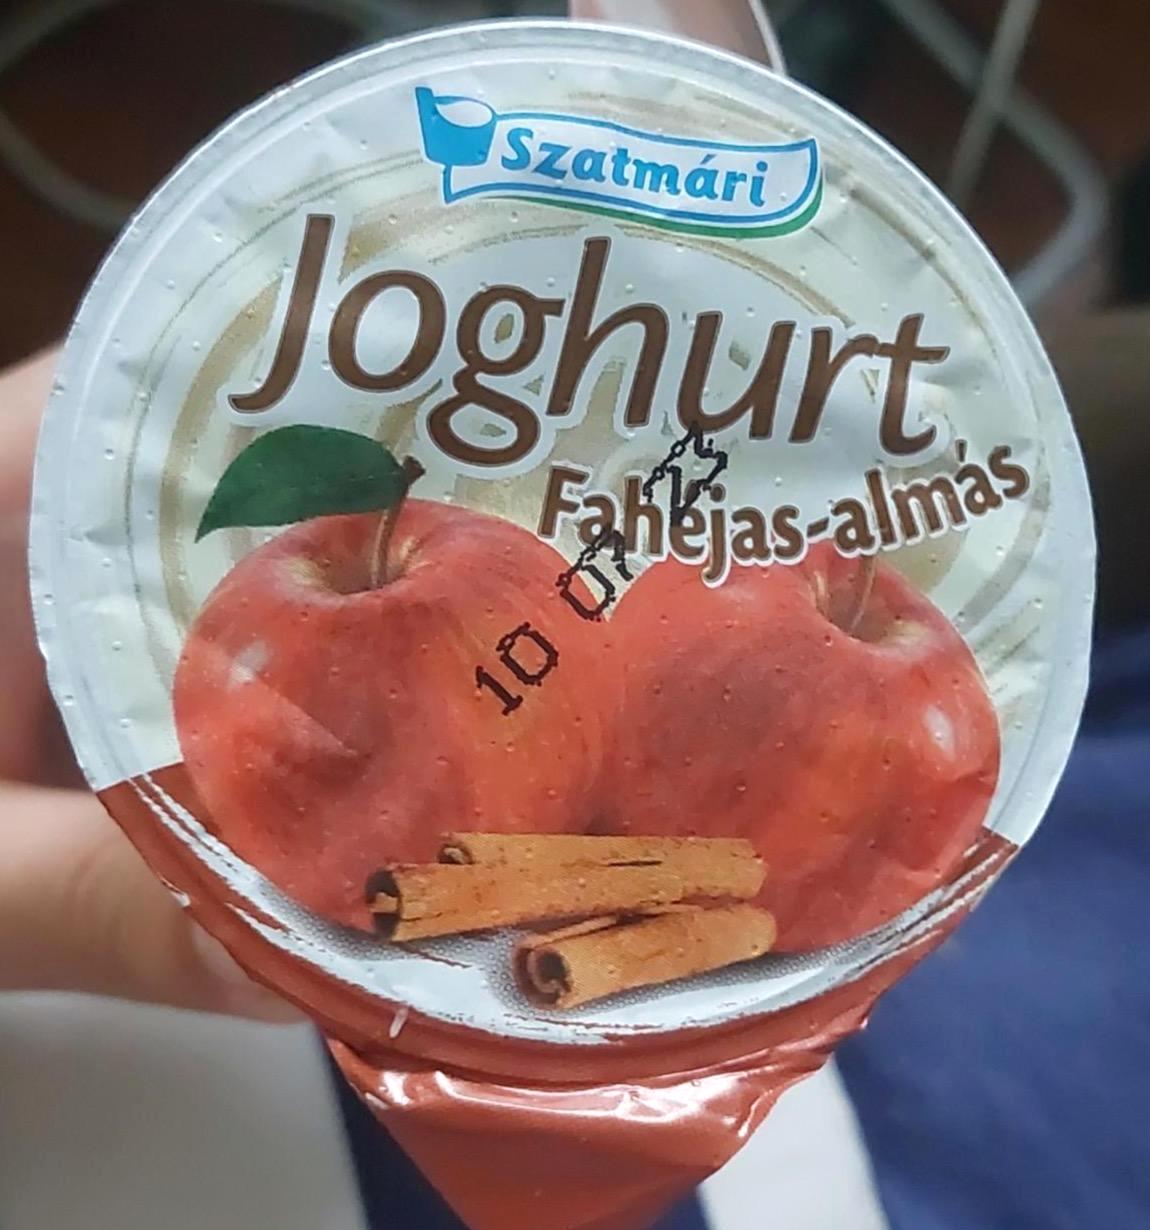 Képek - Fahéjas-almás joghurt Szatmári